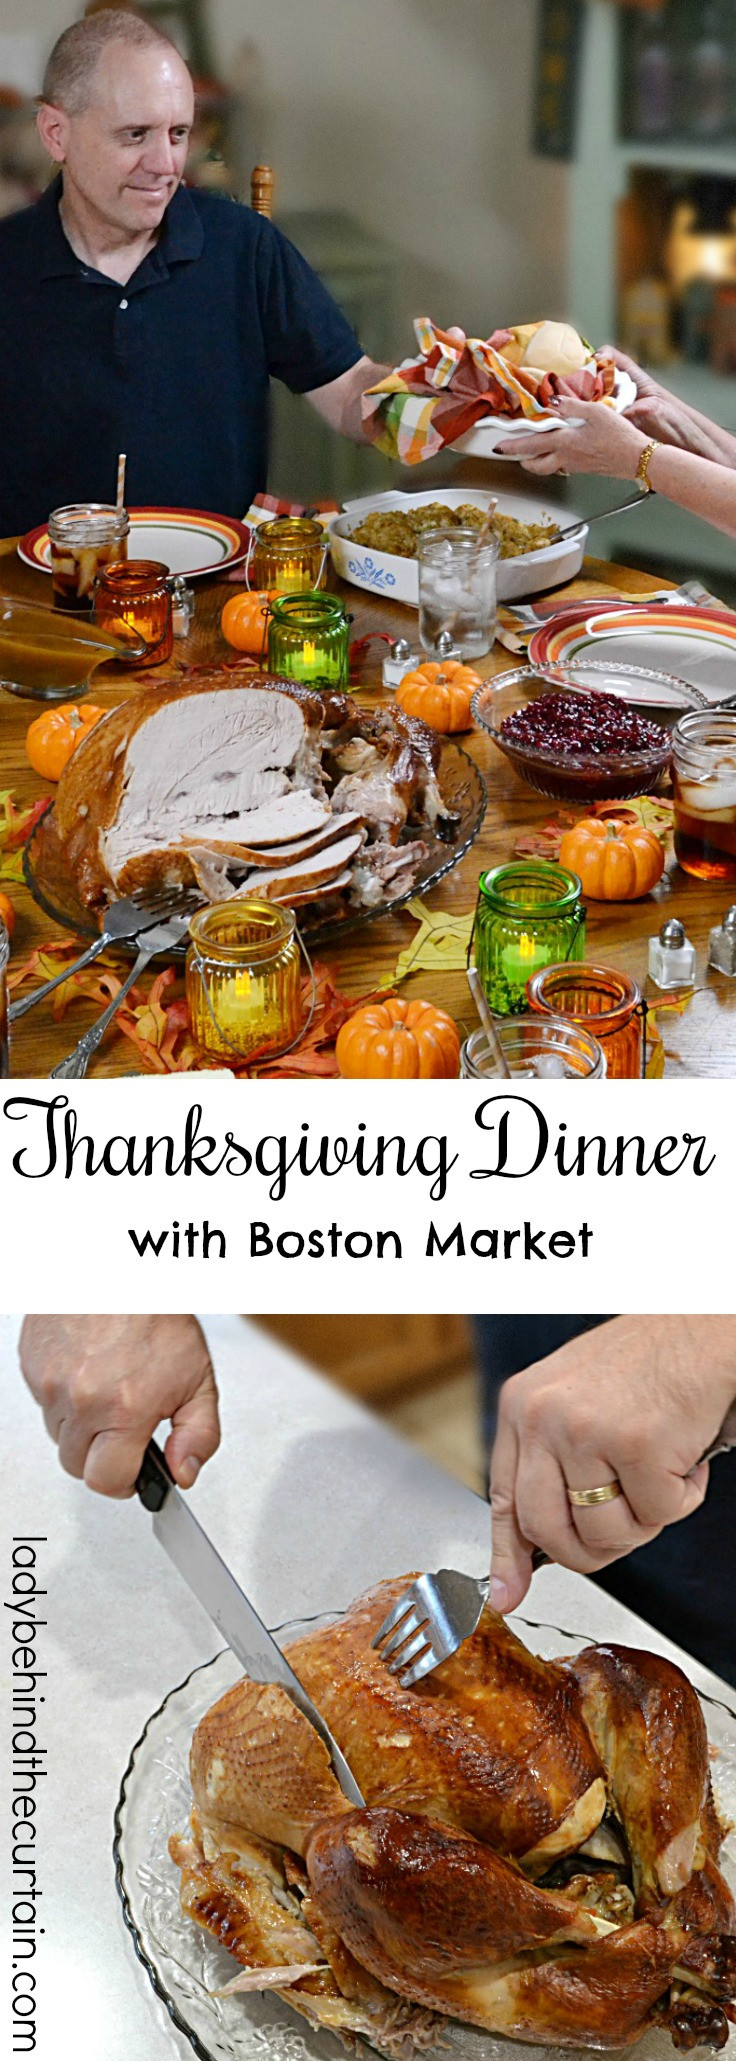 Thanksgiving Dinner Boston
 Thanksgiving Dinner with Boston Market